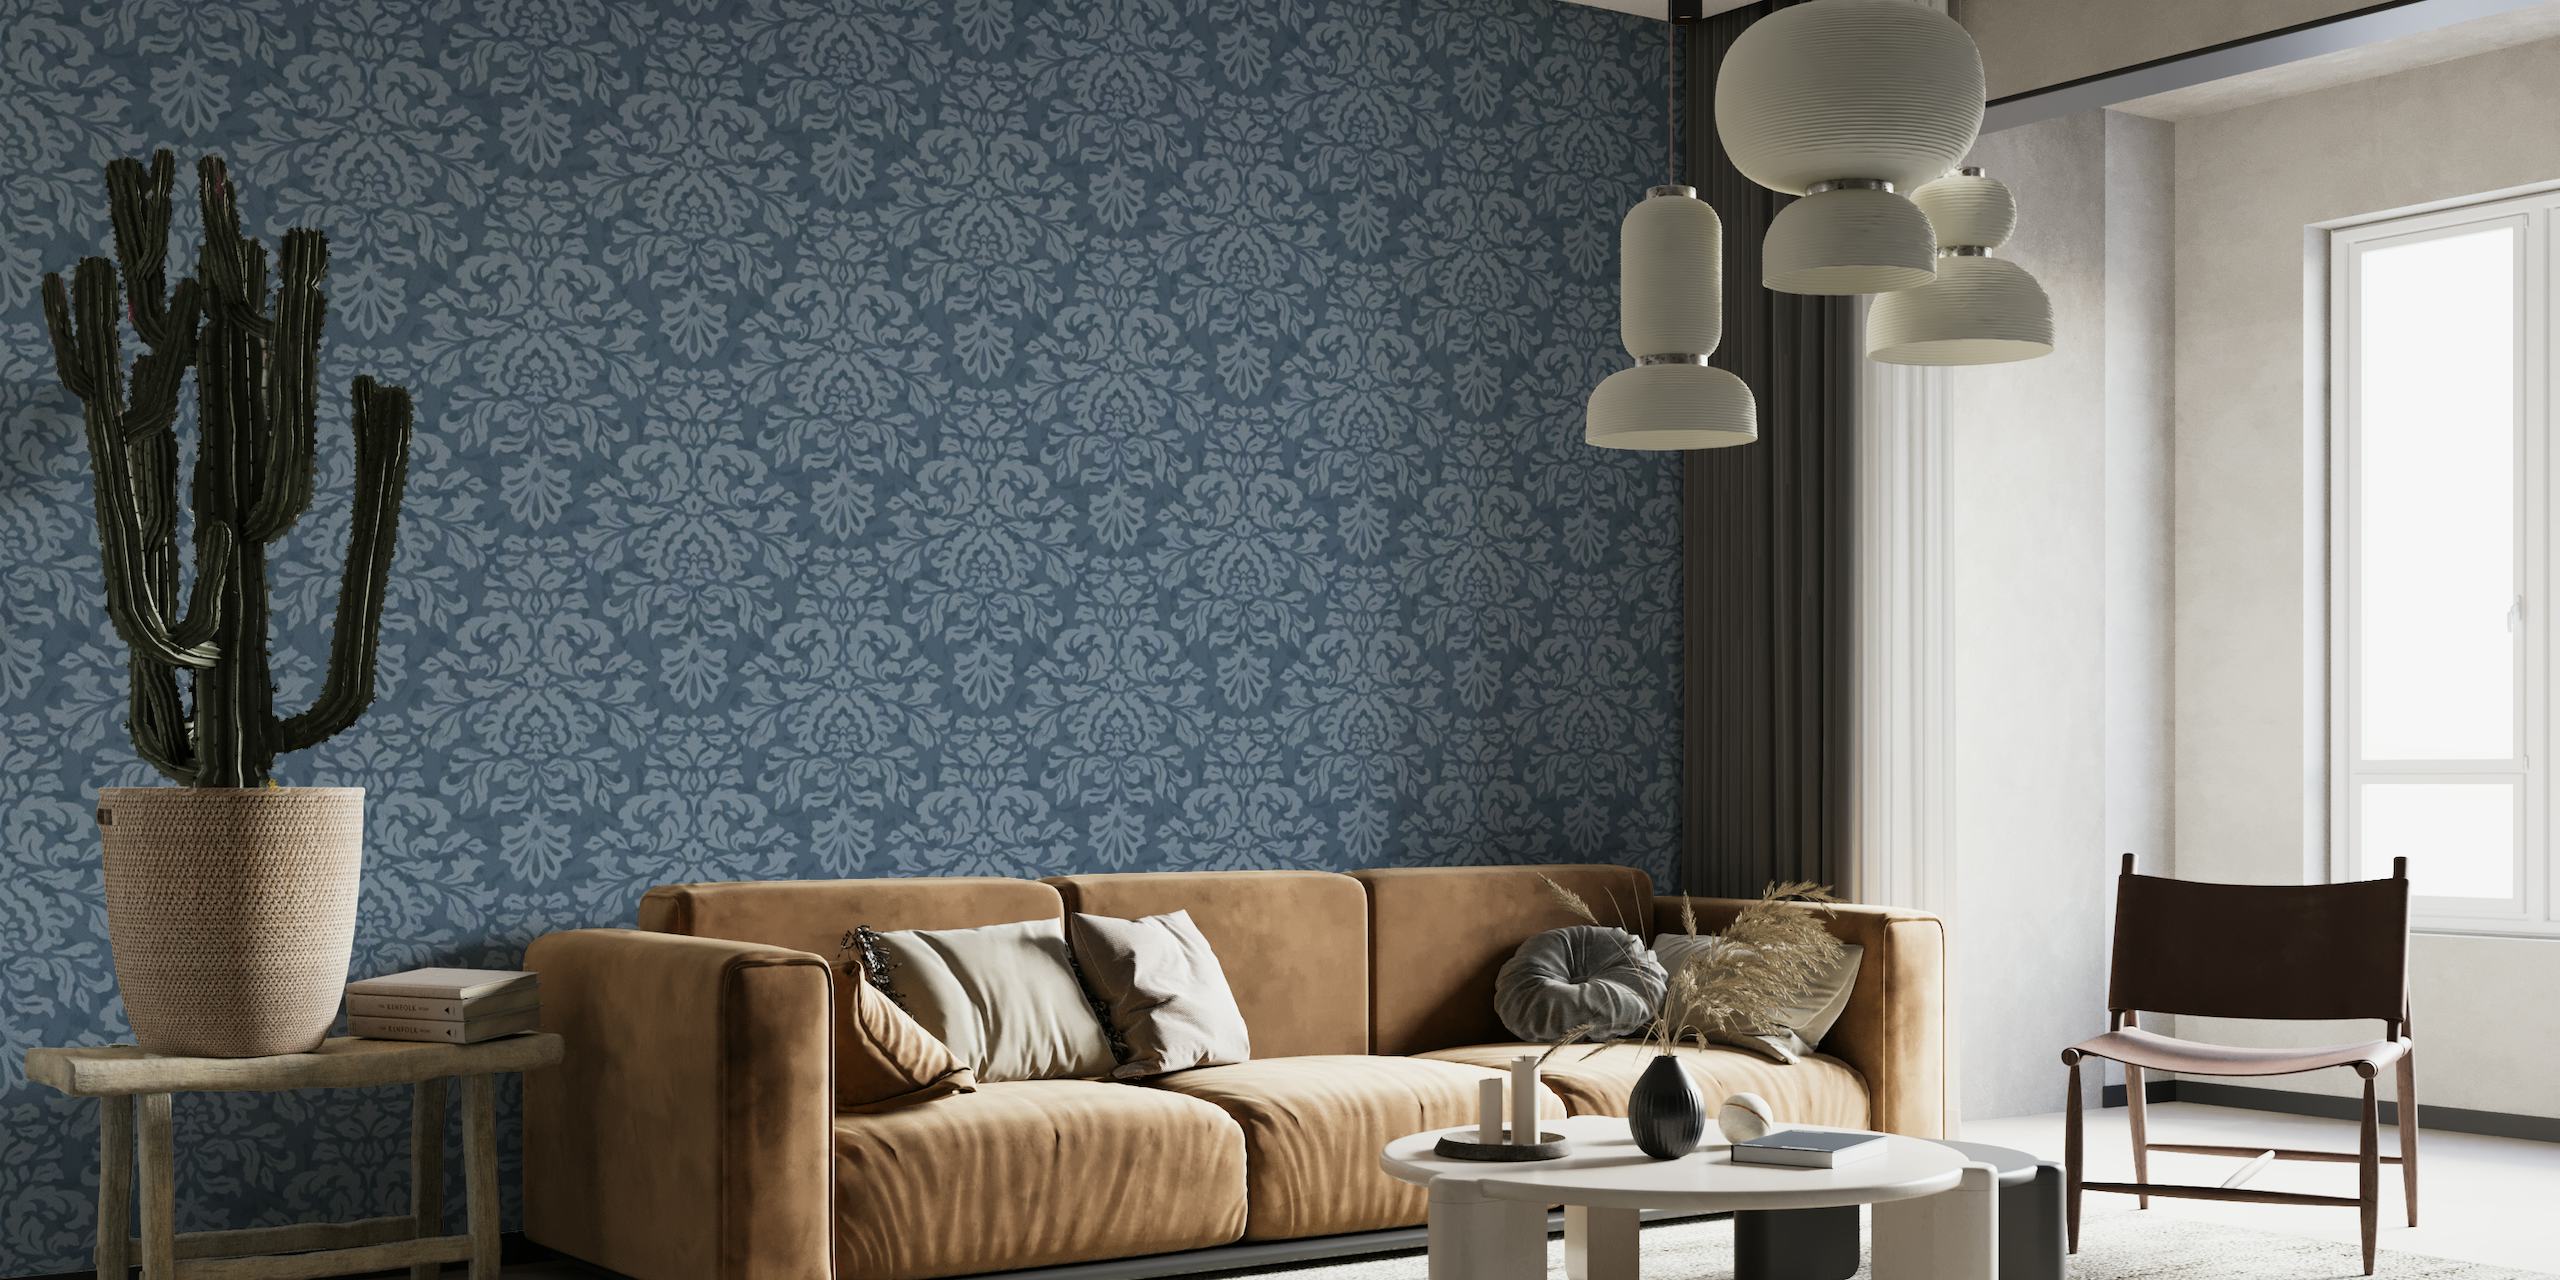 Fotomural vinílico de parede clássico com padrão damasco azul para adicionar elegância ao seu espaço